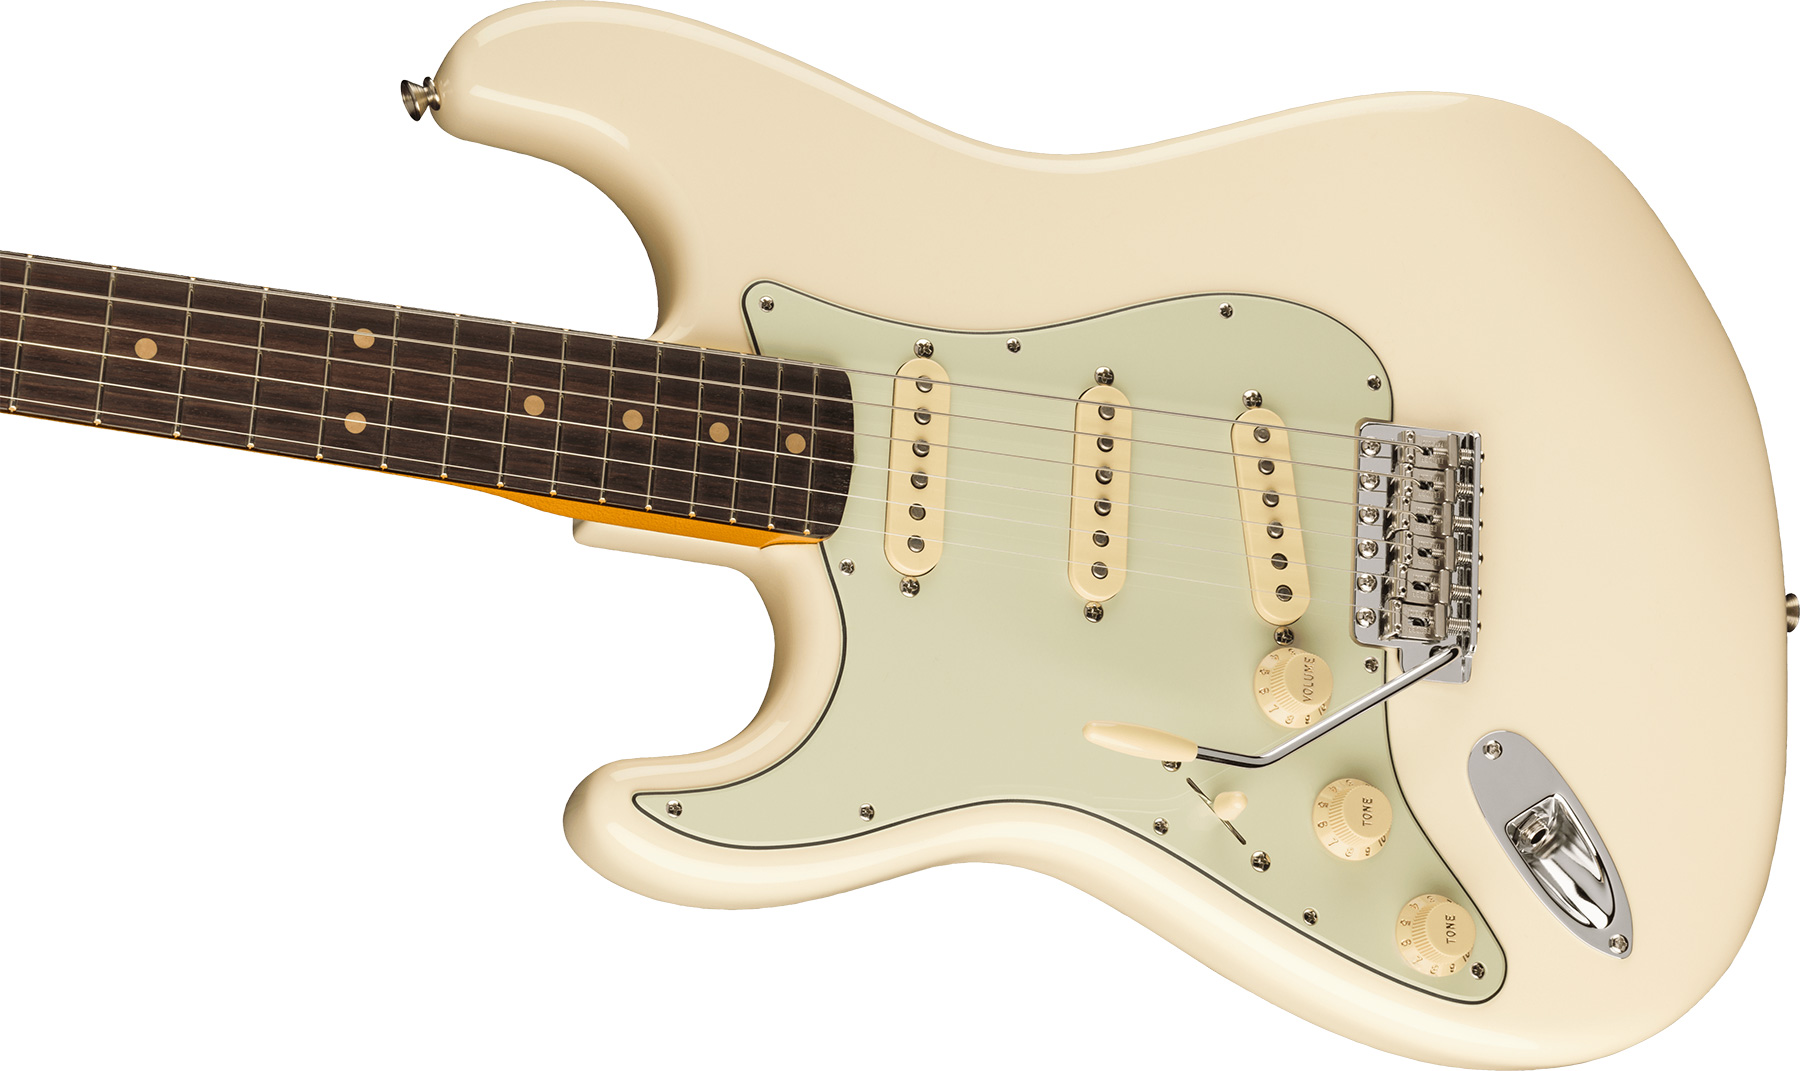 Fender Strat 1961 American Vintage Ii Lh Gaucher Usa 3s Trem Rw - Olympic White - Guitarra electrica para zurdos - Variation 2